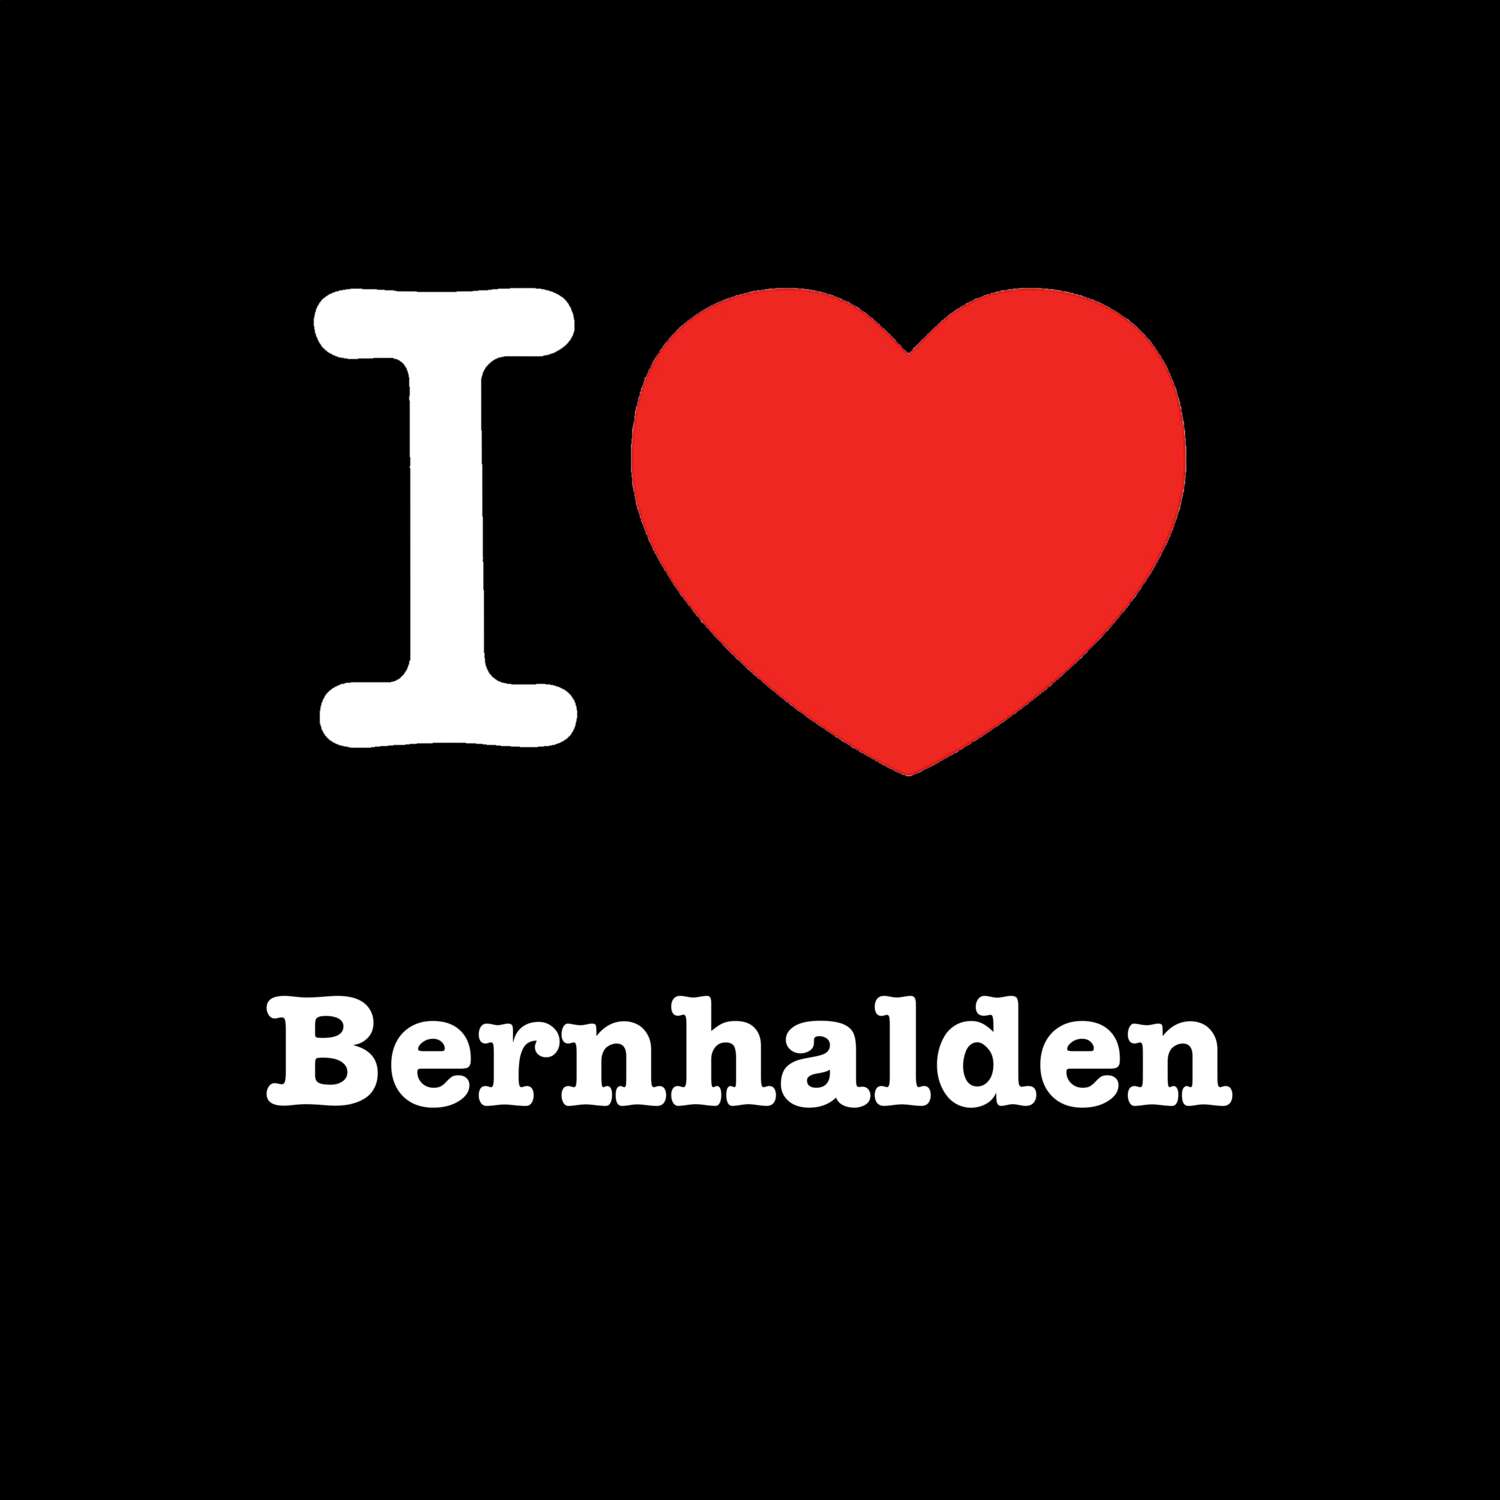 Bernhalden T-Shirt »I love«